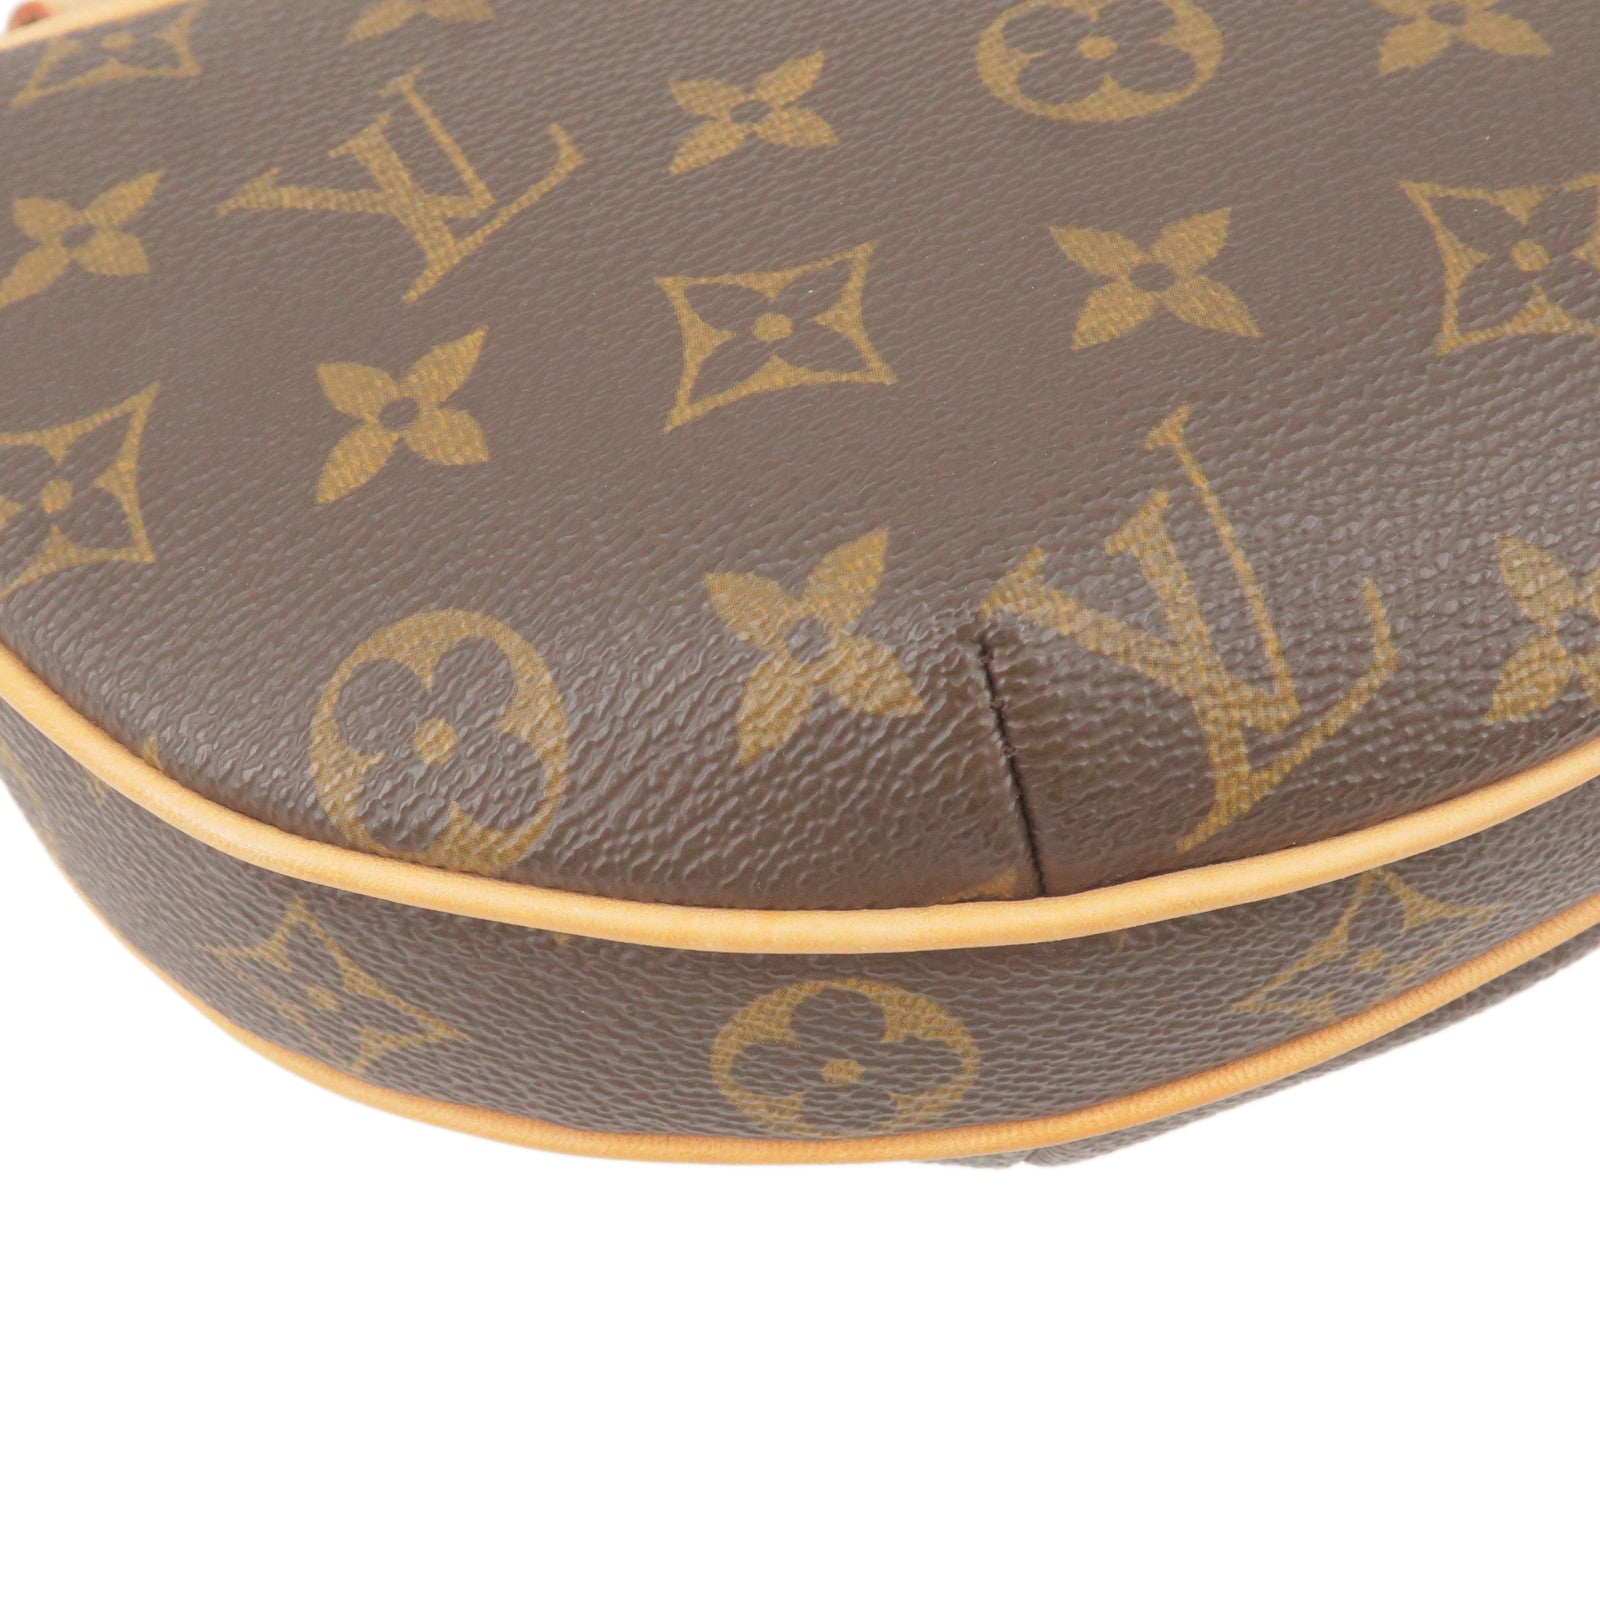 LOUIS VUITTON Pochette Croissant Monogram Shoulder Bag PM M51510